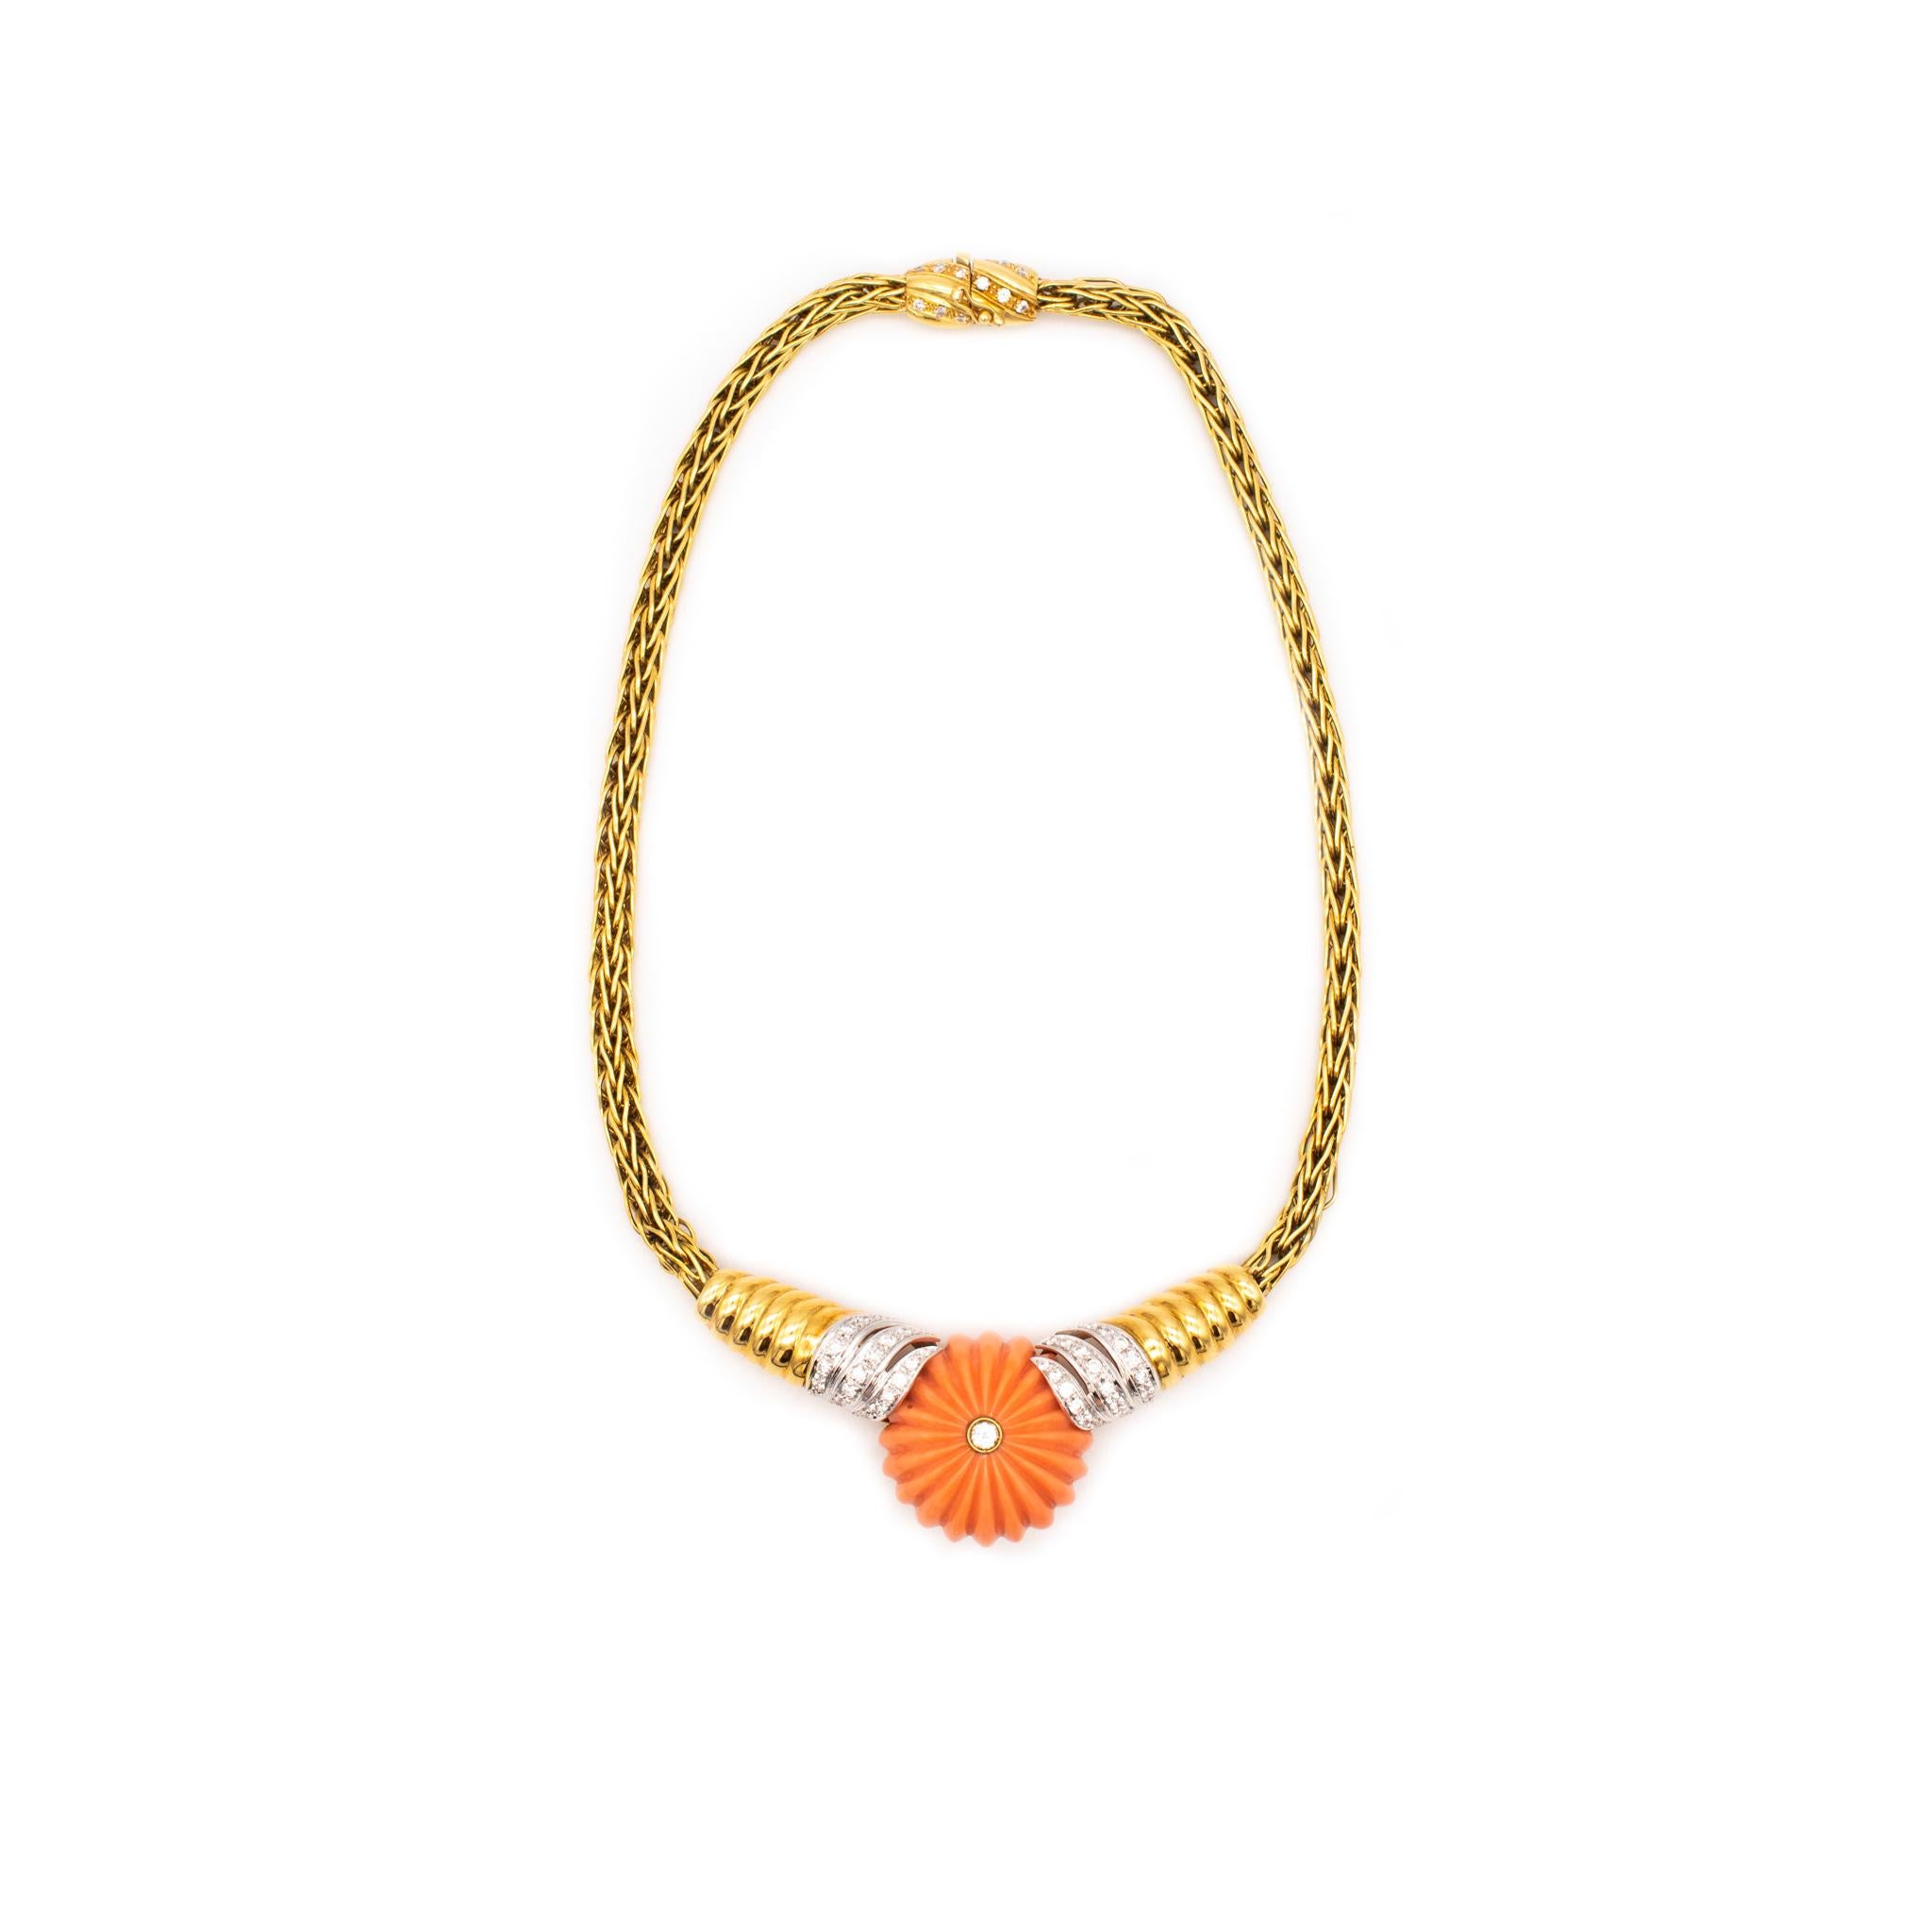 Außergewöhnliche Halskette, entworfen von Spritzer & Fuhrmann.

Sehr hübsches und elegantes Stück aus der Mitte des Jahrhunderts, ca. 1960er Jahre. Diese einzigartige Halskette ist aus massivem 18-karätigem Gelbgold gefertigt und mit